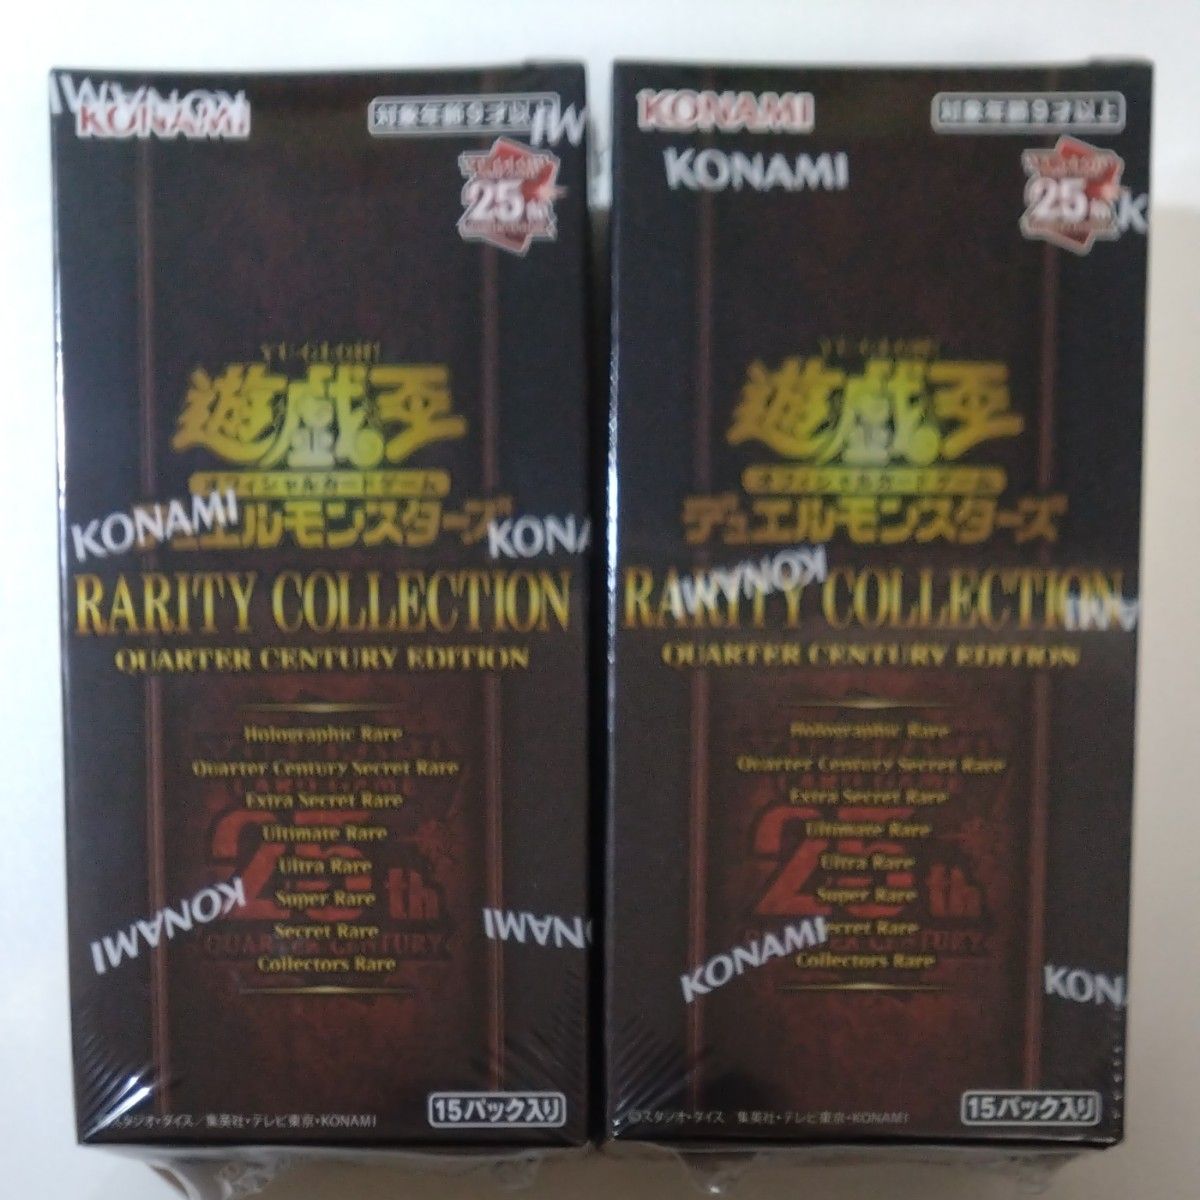 最新のデザイン 遊戯王 レアリティコレクション レアコレ 2BOXセット